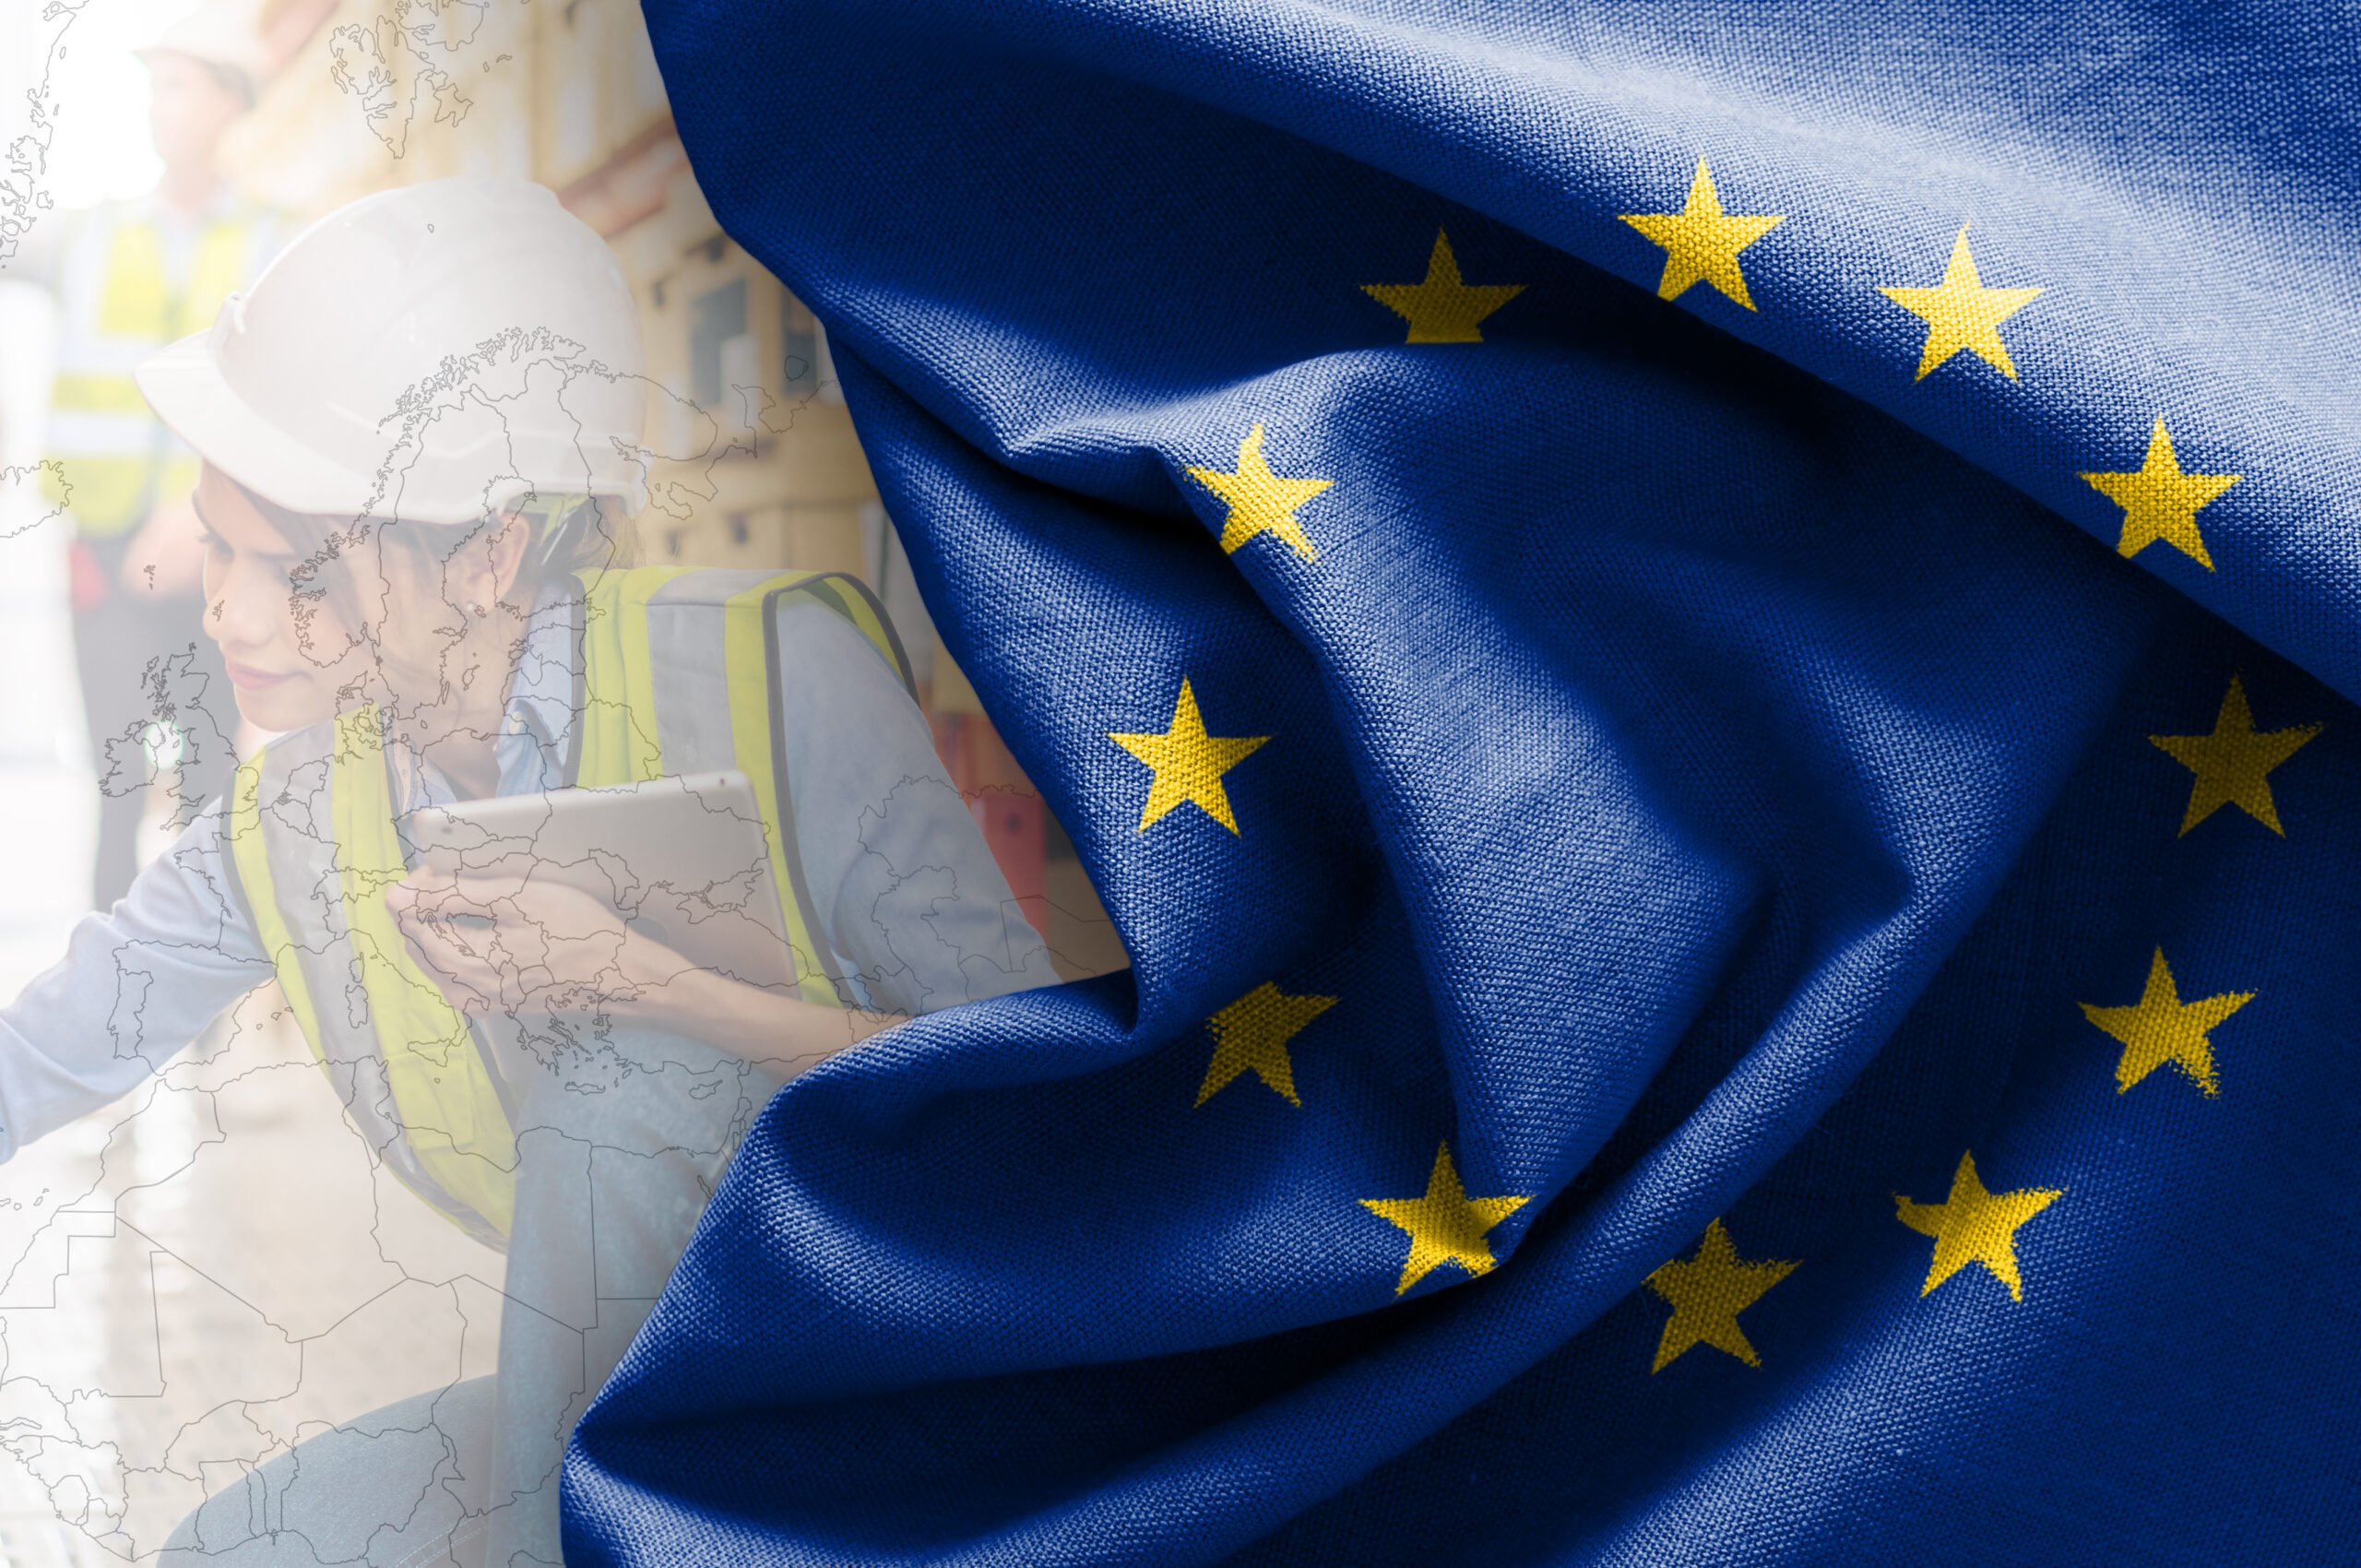 Hinter dem Bild einer Europakarte ist das Bild einer Frau mit Bauhelm zu sehen. Darüber liegt seitlich eine Europa-Flagge.